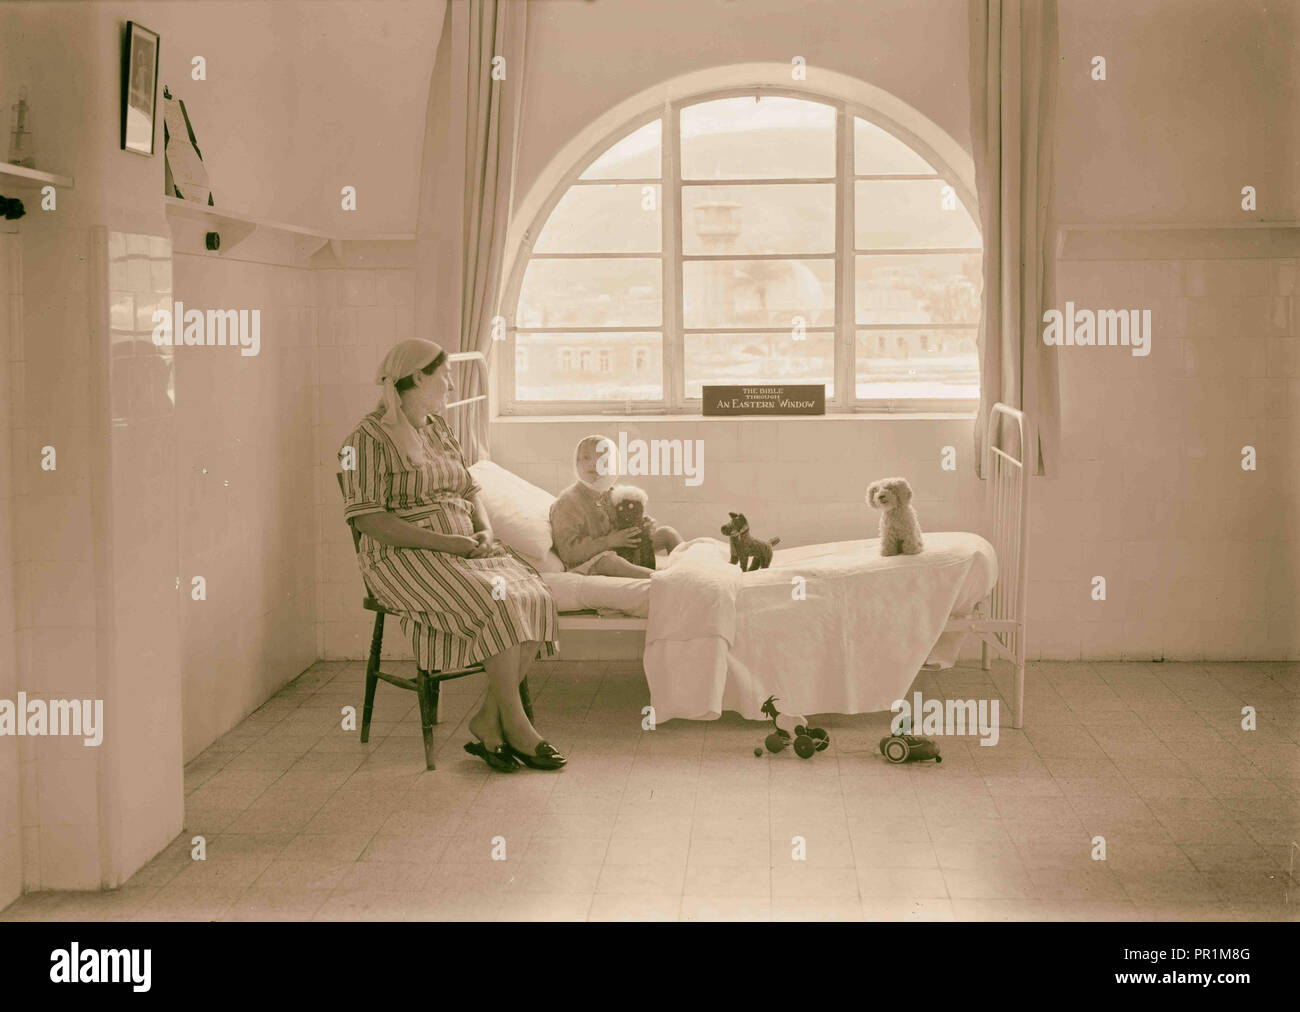 L'hôpital de mission de Sylvestre, Tibériade. Un petit garçon juif patient dans l'hôpital de mission de Sylvestre, Tibériade. Tibériade, Israël, 1934 Banque D'Images